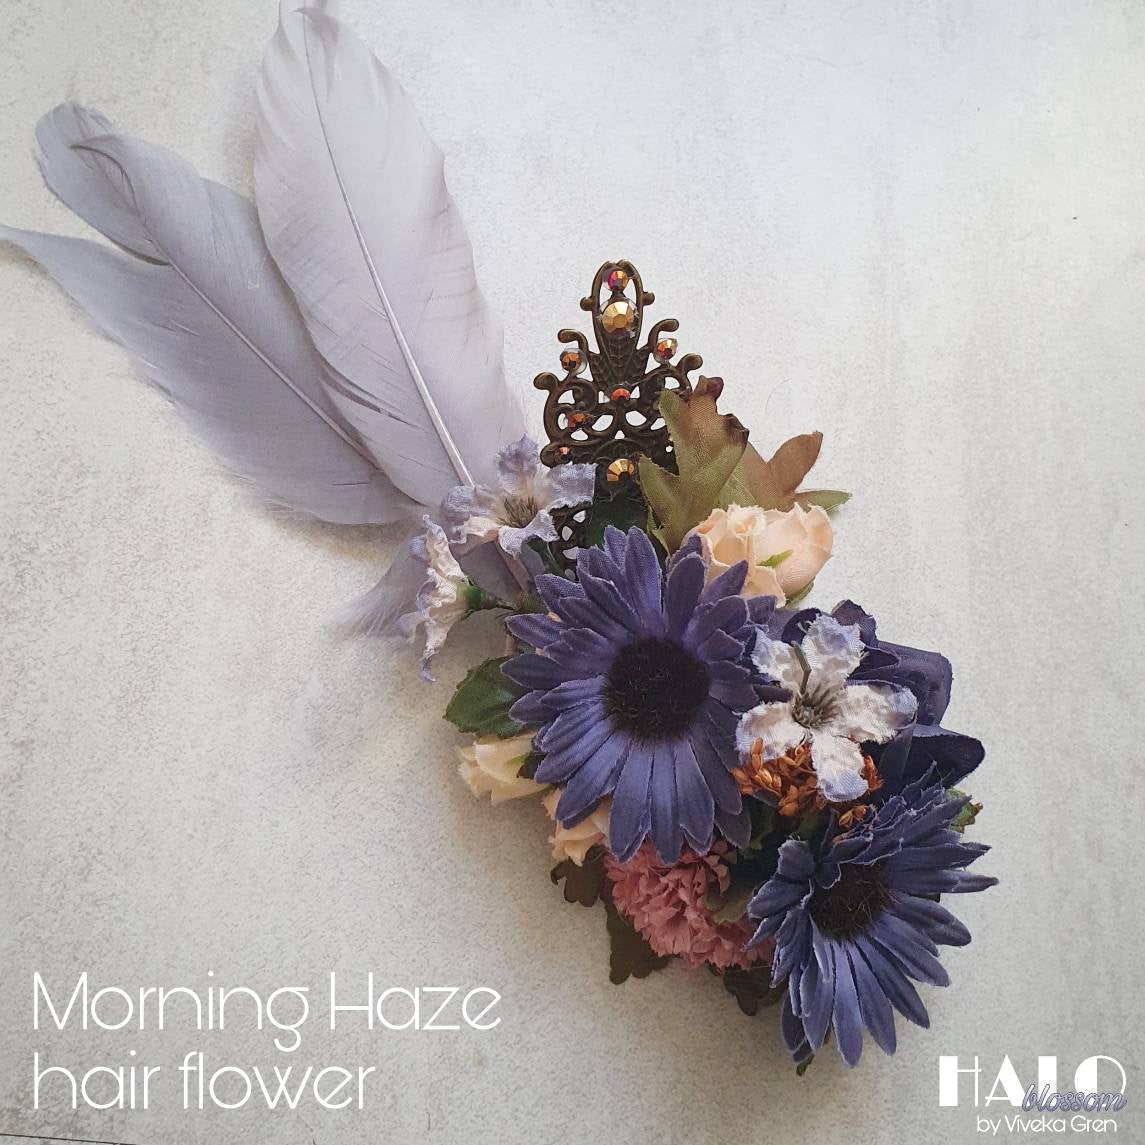 The Morning Haze Hair Flower